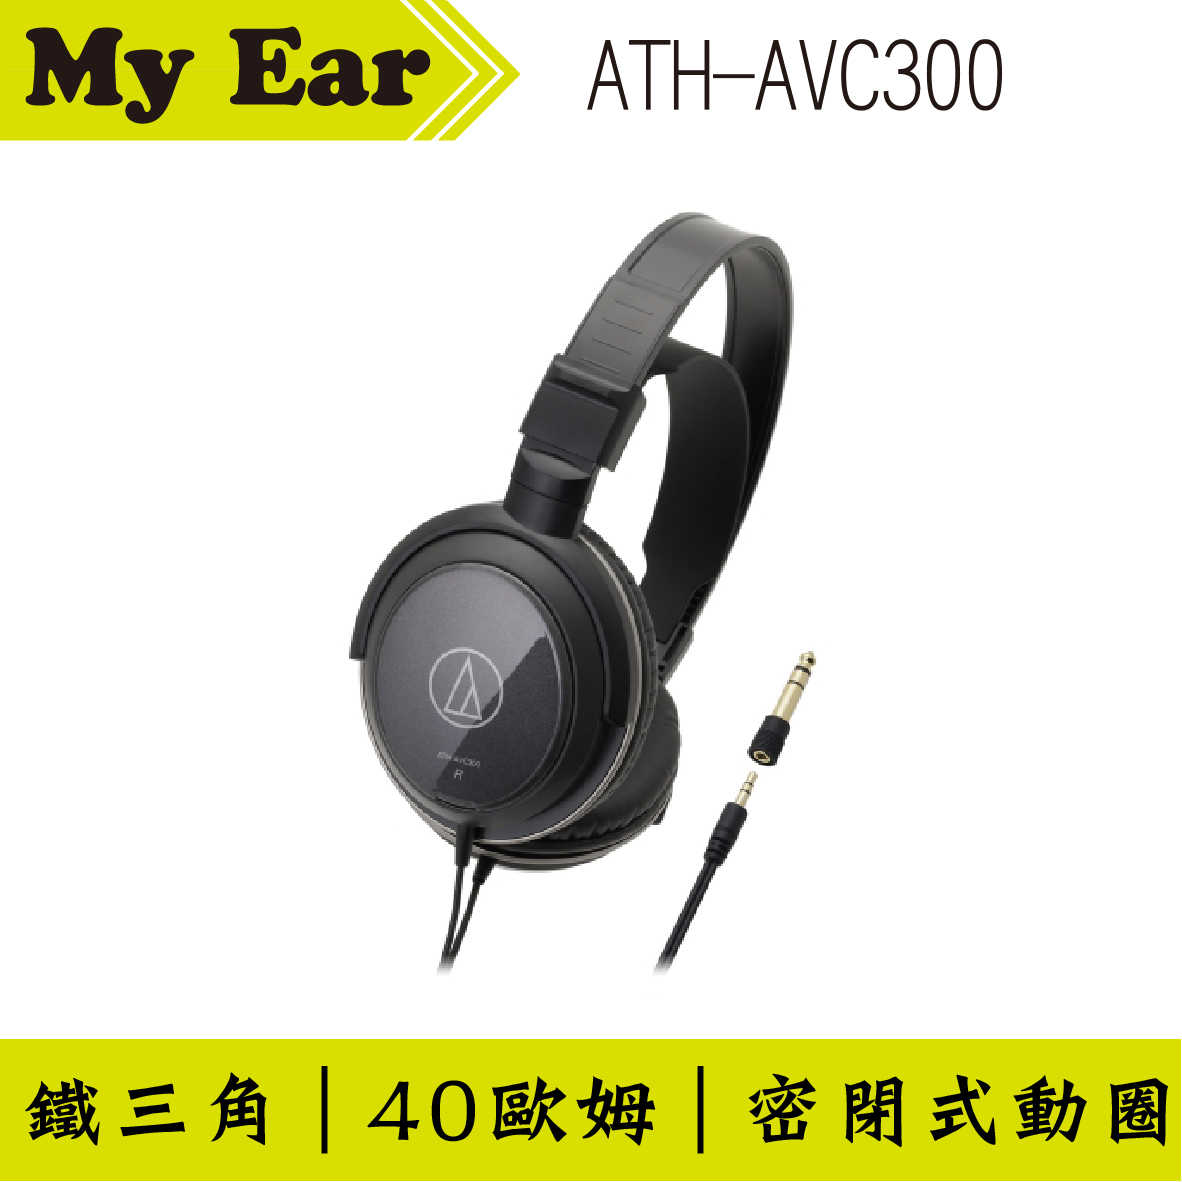 鐵三角 ATH-AVC300 密閉式耳罩式耳機 | My Ear耳機專門店